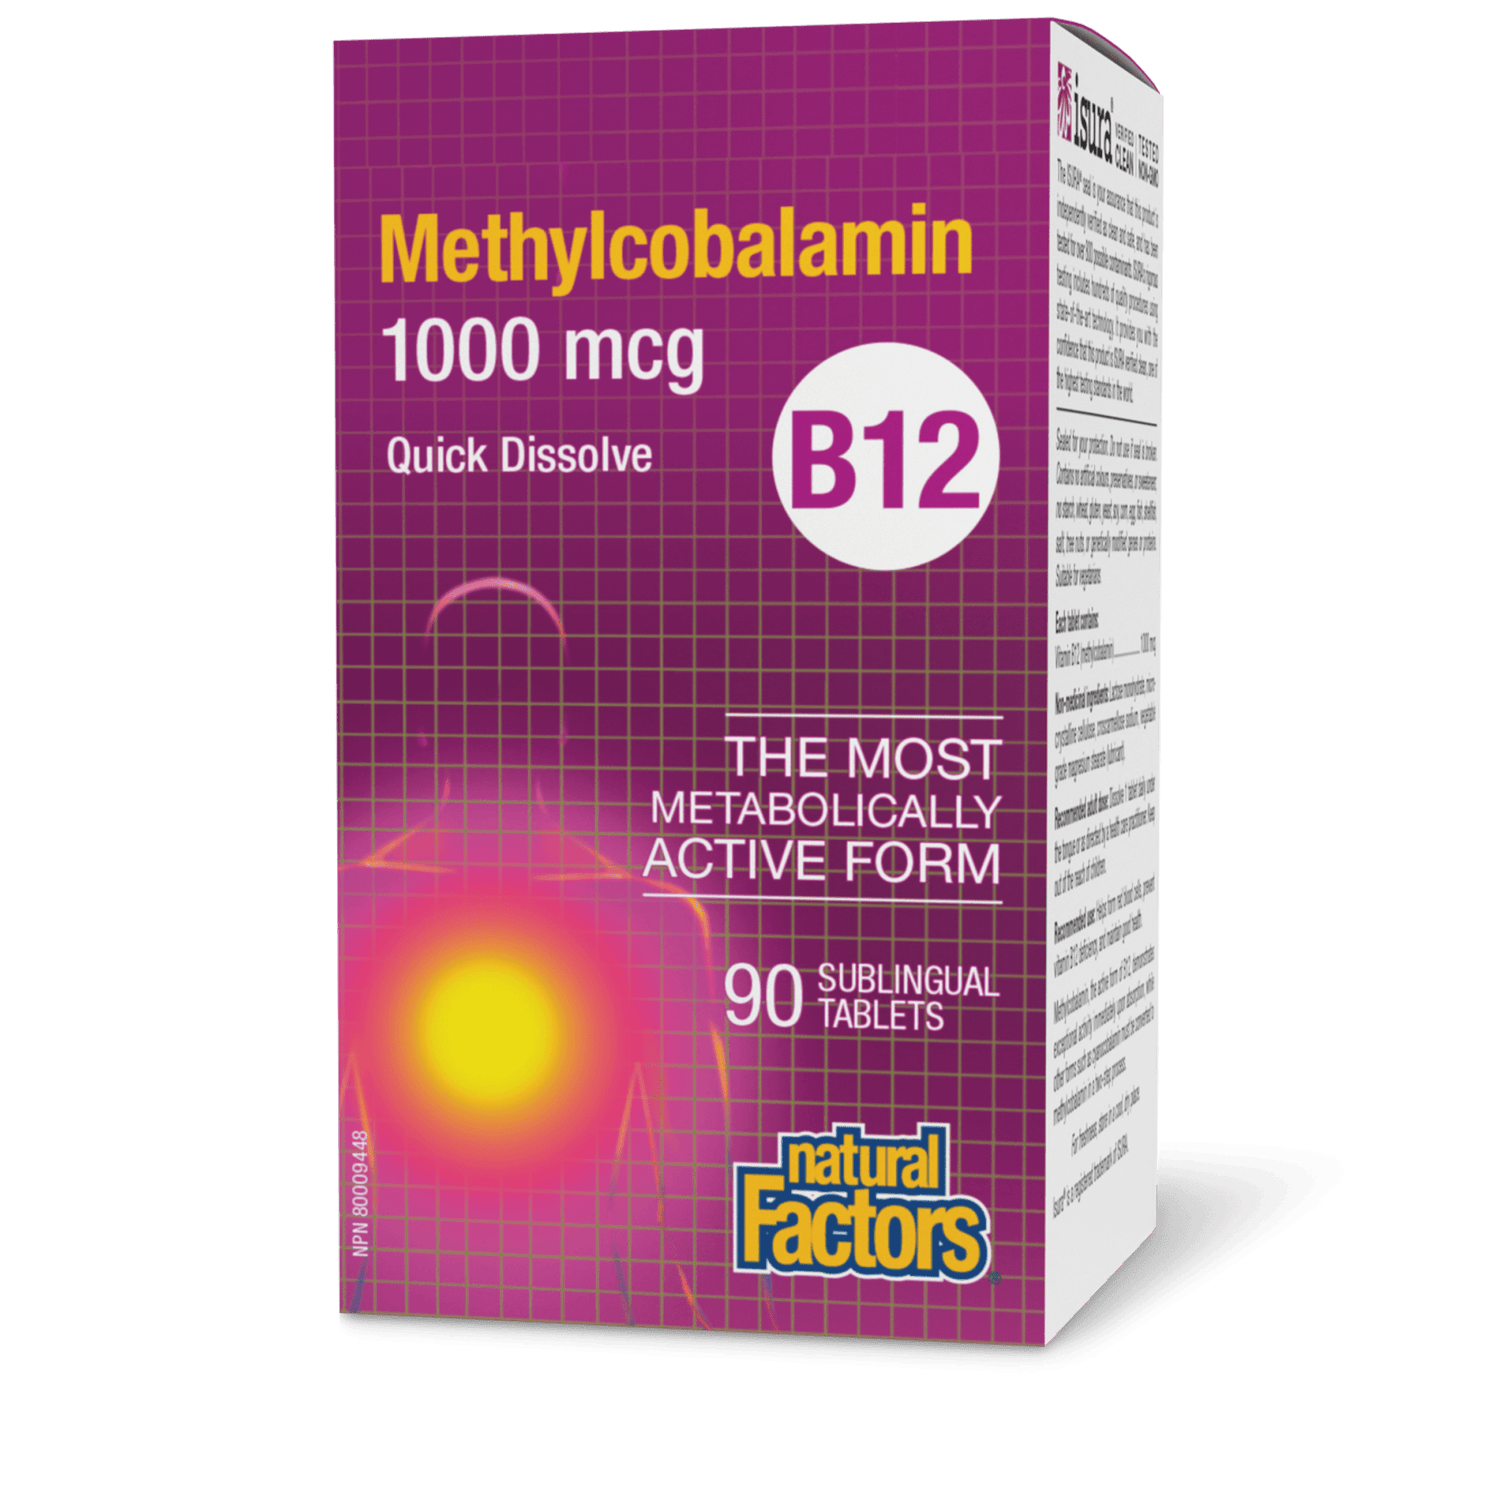 B12 Methylcobalamin 1000 mcg, Natural Factors|v|image|1242